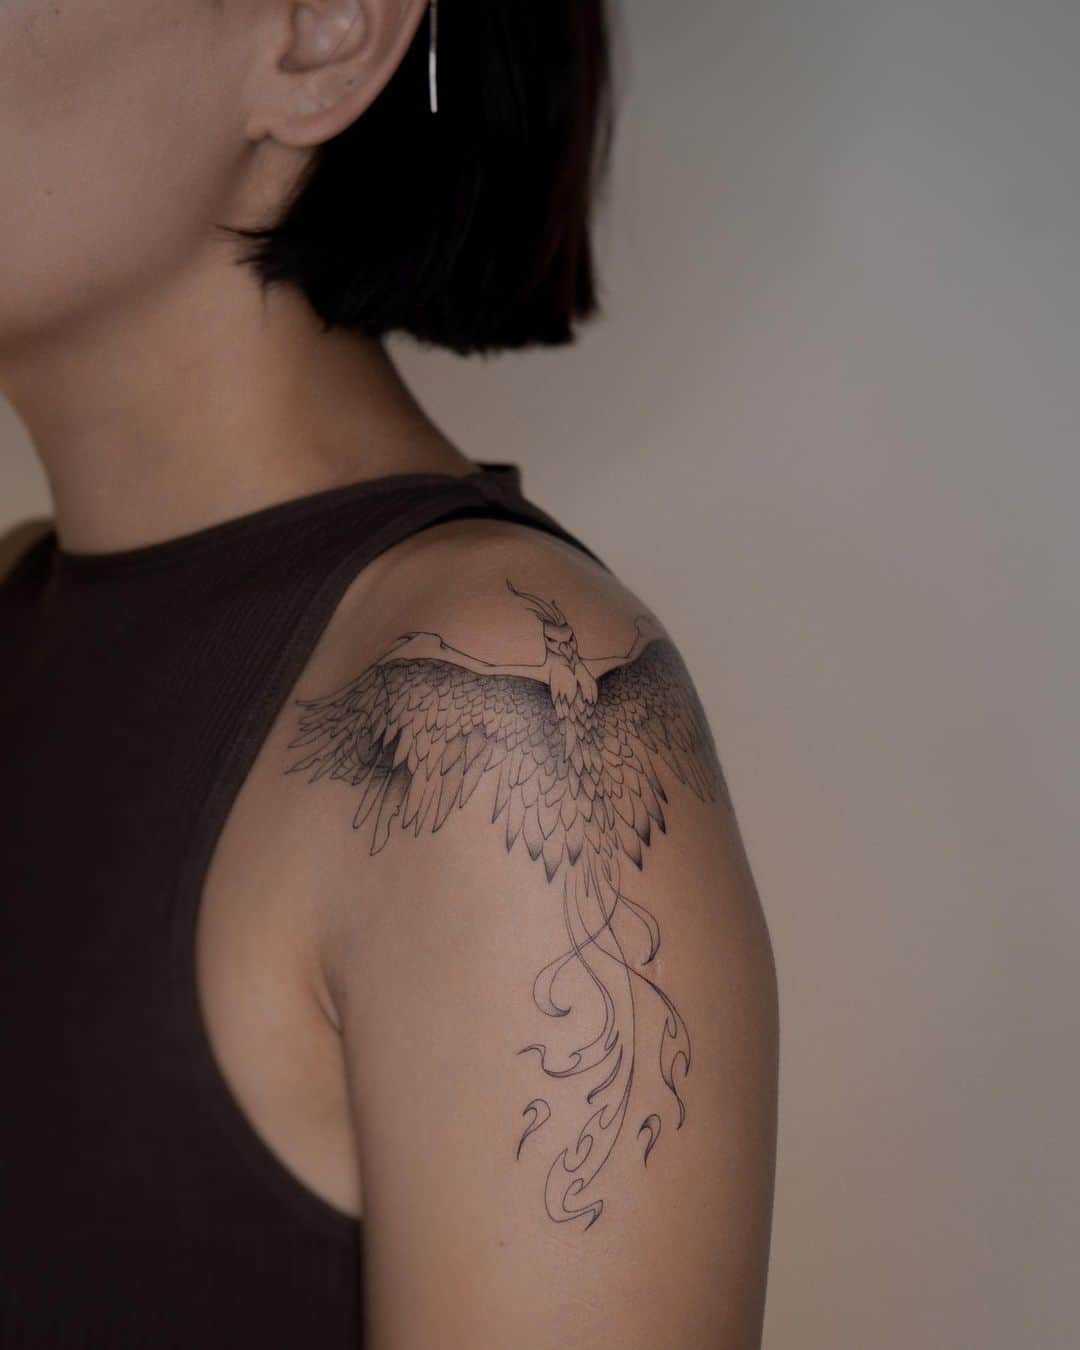 Phoenix tattoo on shoulder by nurai.tattoo